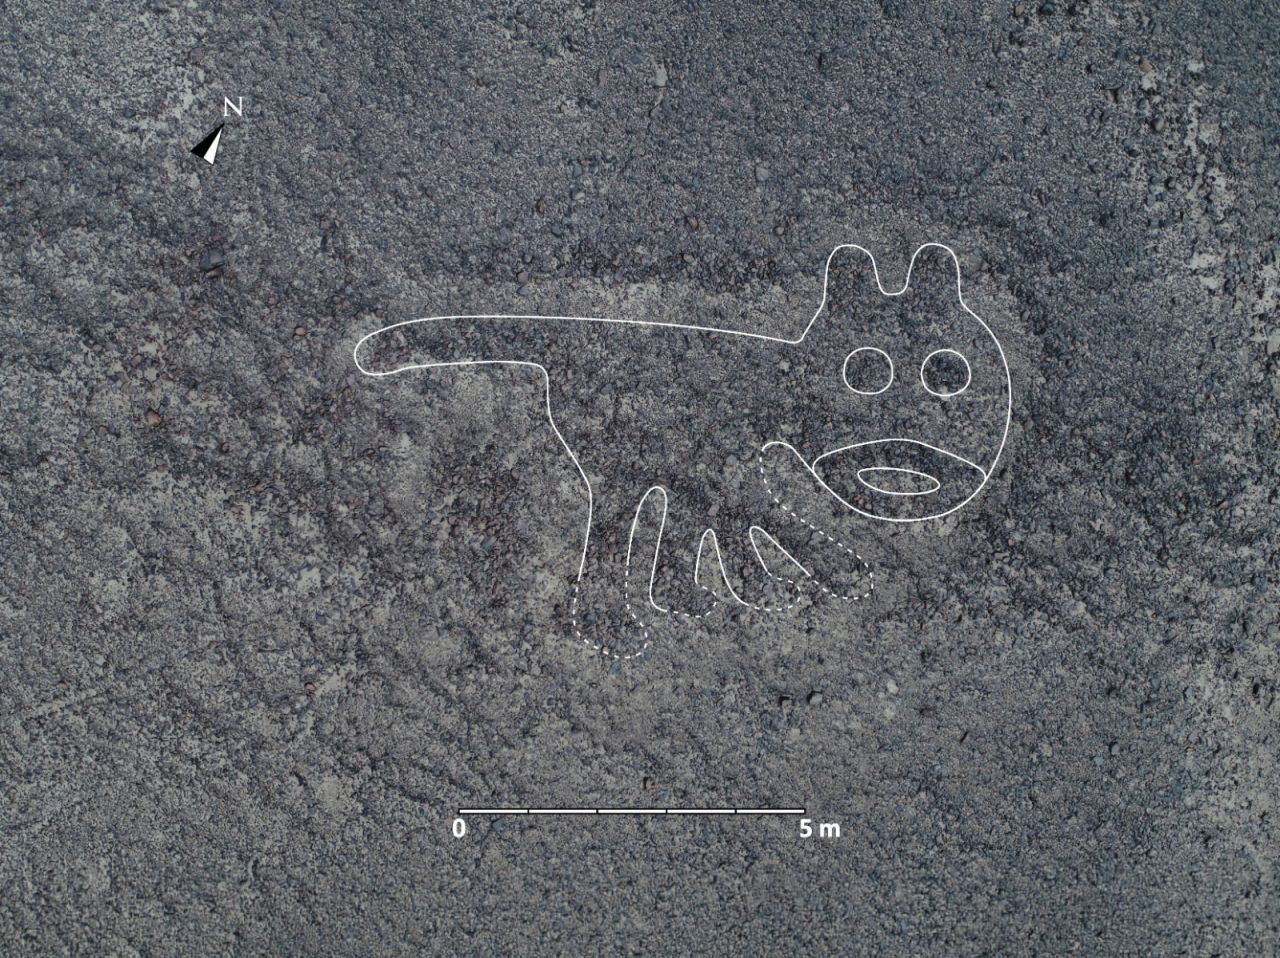 Yapay zeka keşfetti: Peru çölünde gizlenen Nazca çizgileri - Sayfa 2